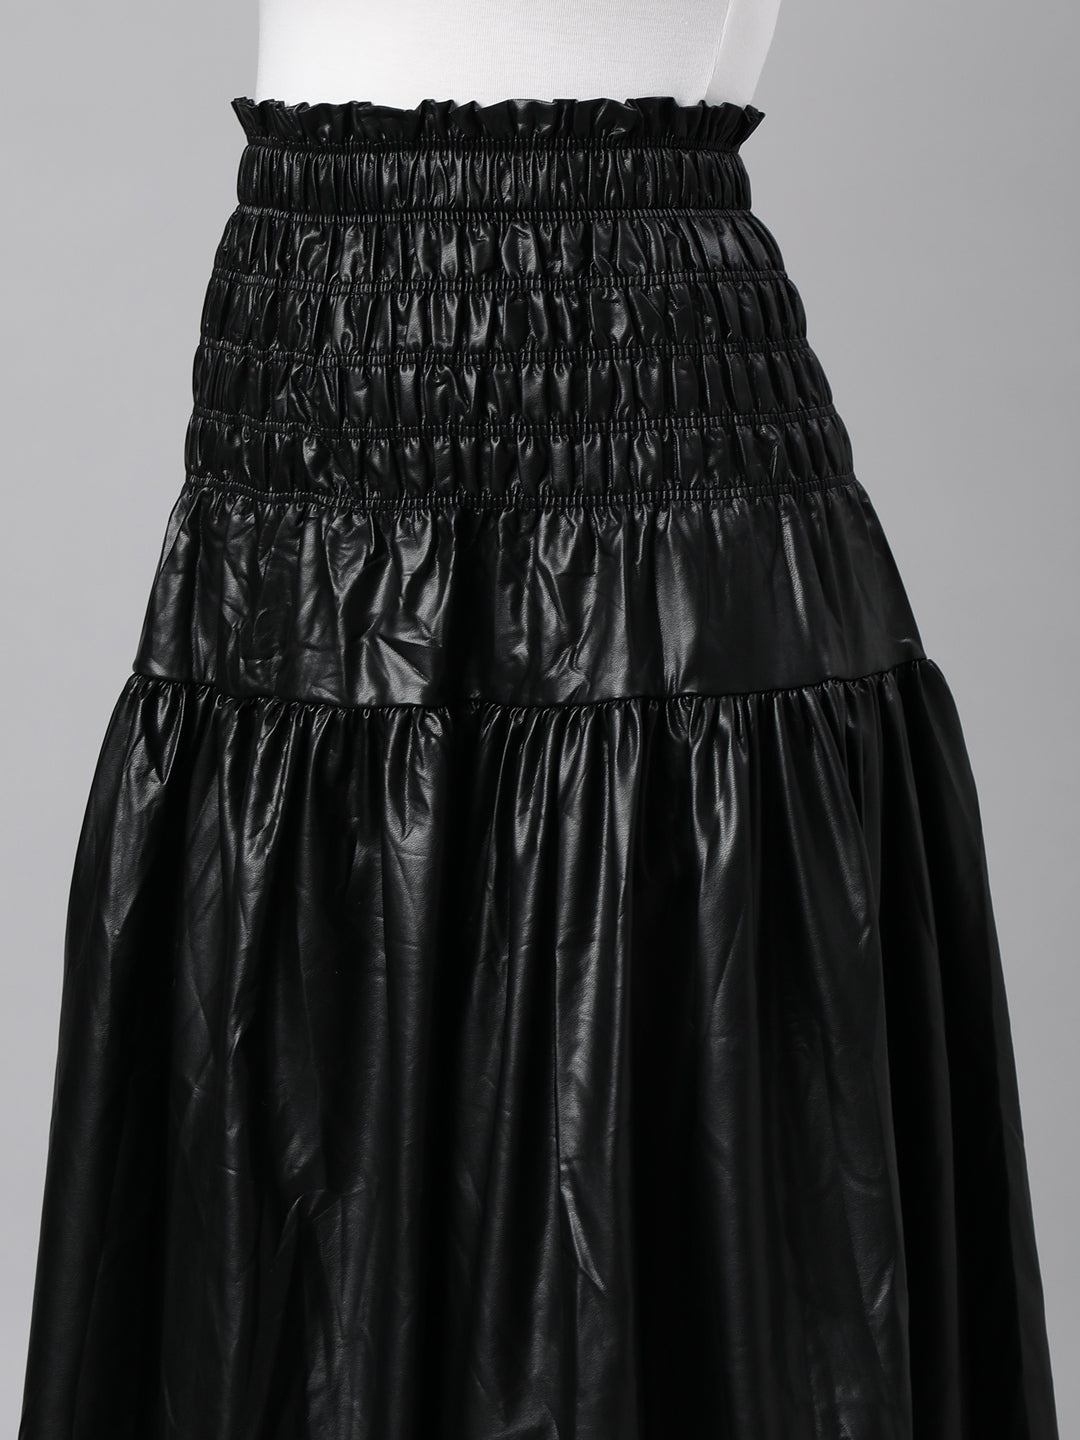 Women Solid Black Flared Midi Skirt